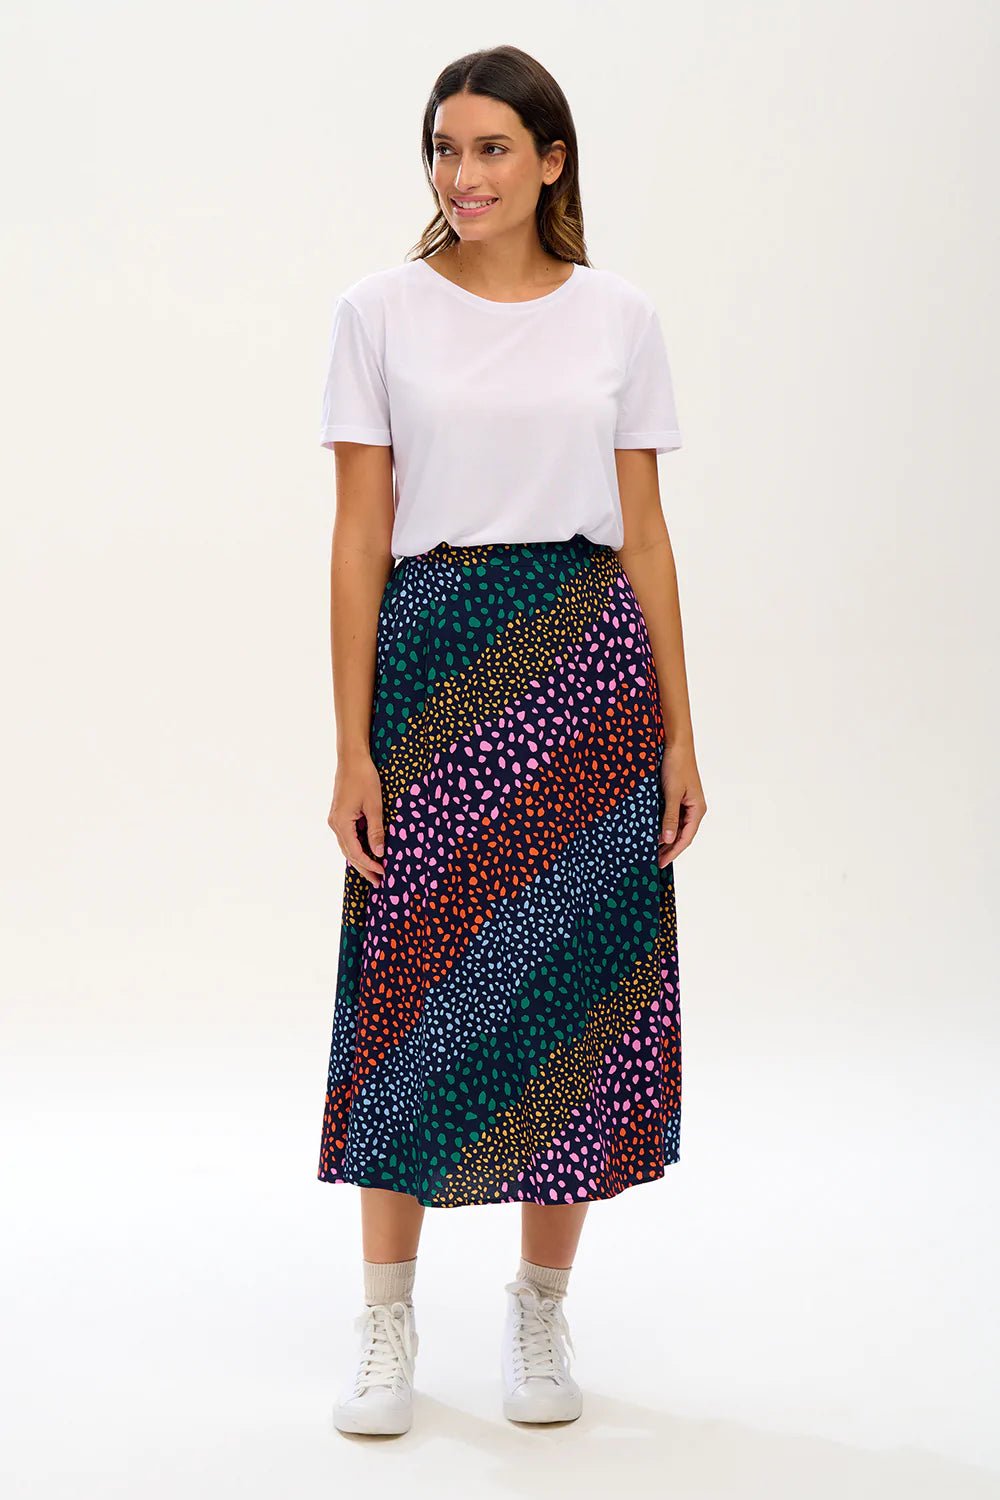 Zora Skirt - Navy, Multi, Painterly Spot Stripe - Rockamilly-Skirts & Shorts-Vintage